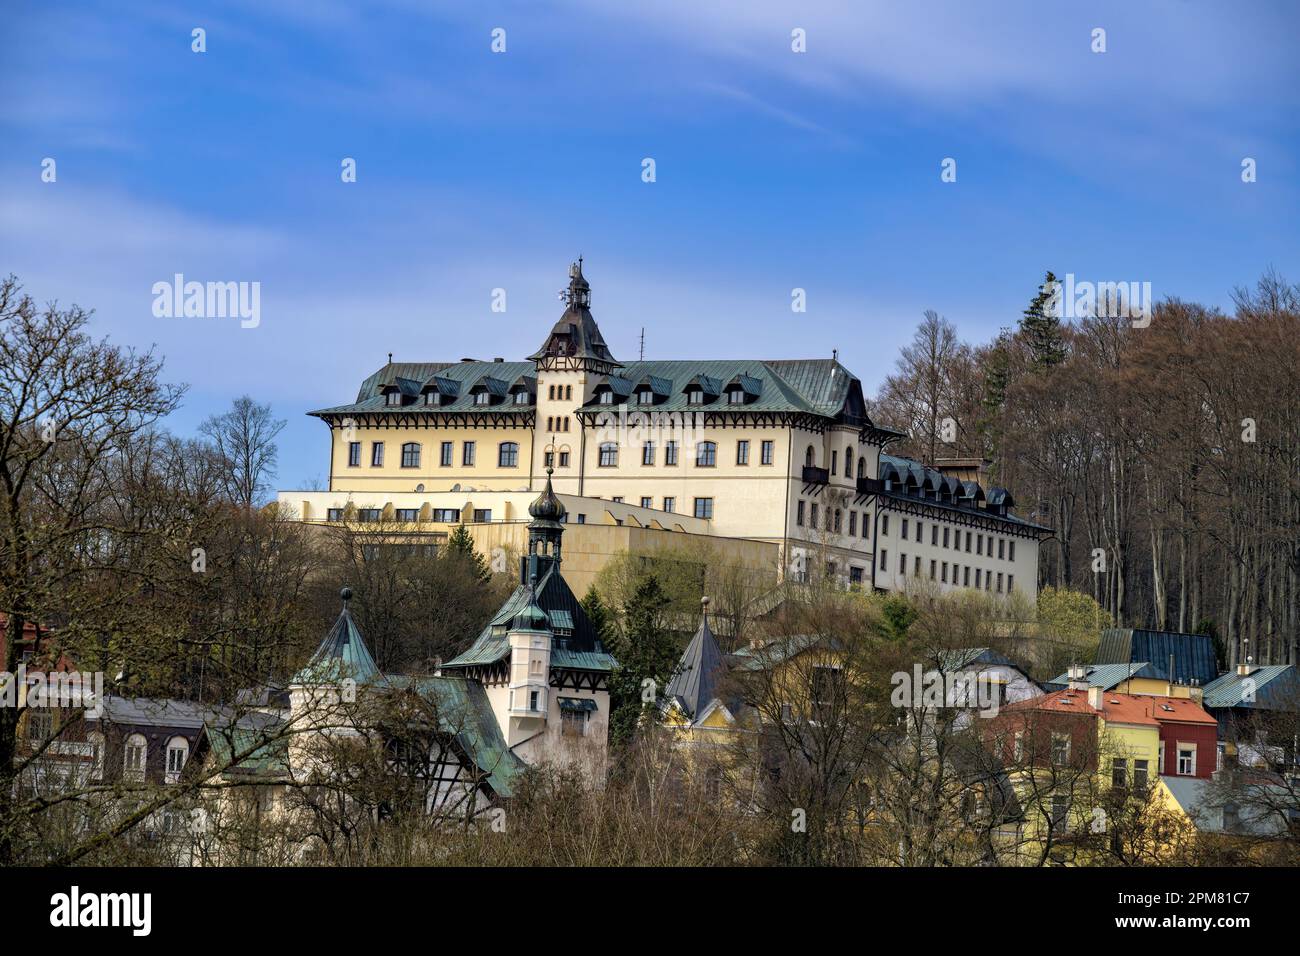 Vista dell'hotel termale sulla collina dal parco - architettura termale - Marianske Lazne (Marienbad) - Repubblica Ceca, Europa Foto Stock